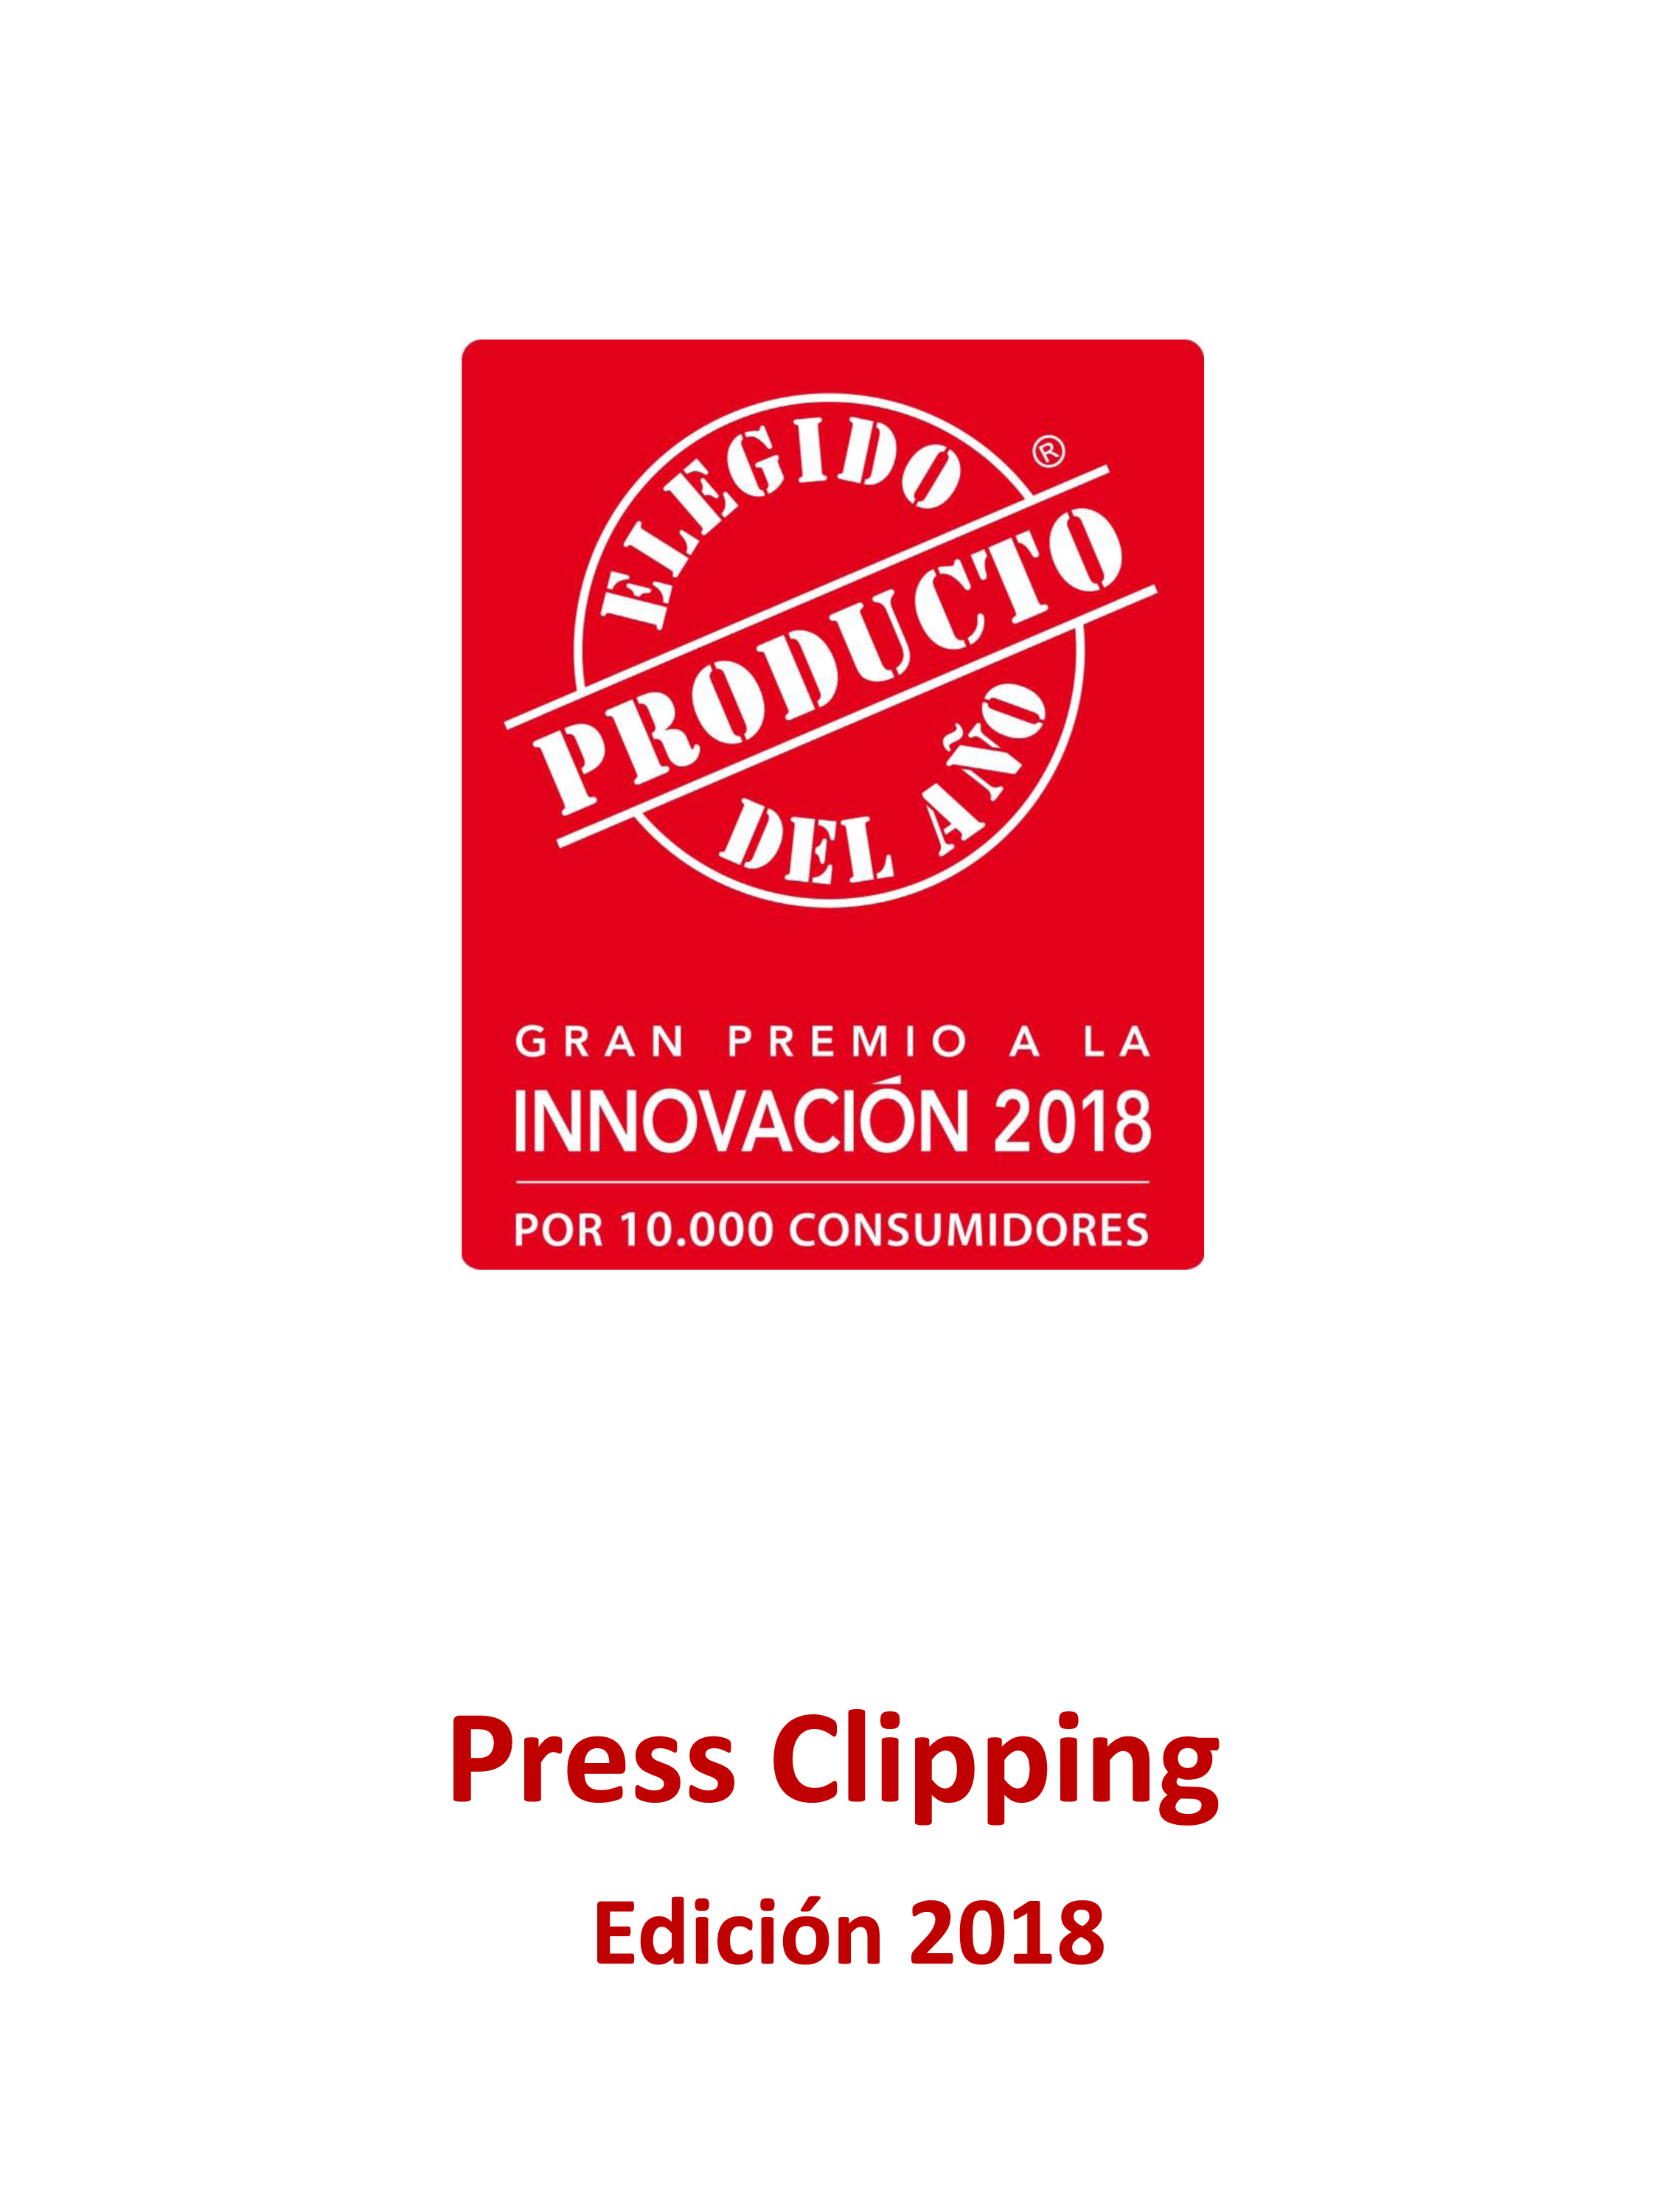 Press Clipping El Producto Del Año 2018 2